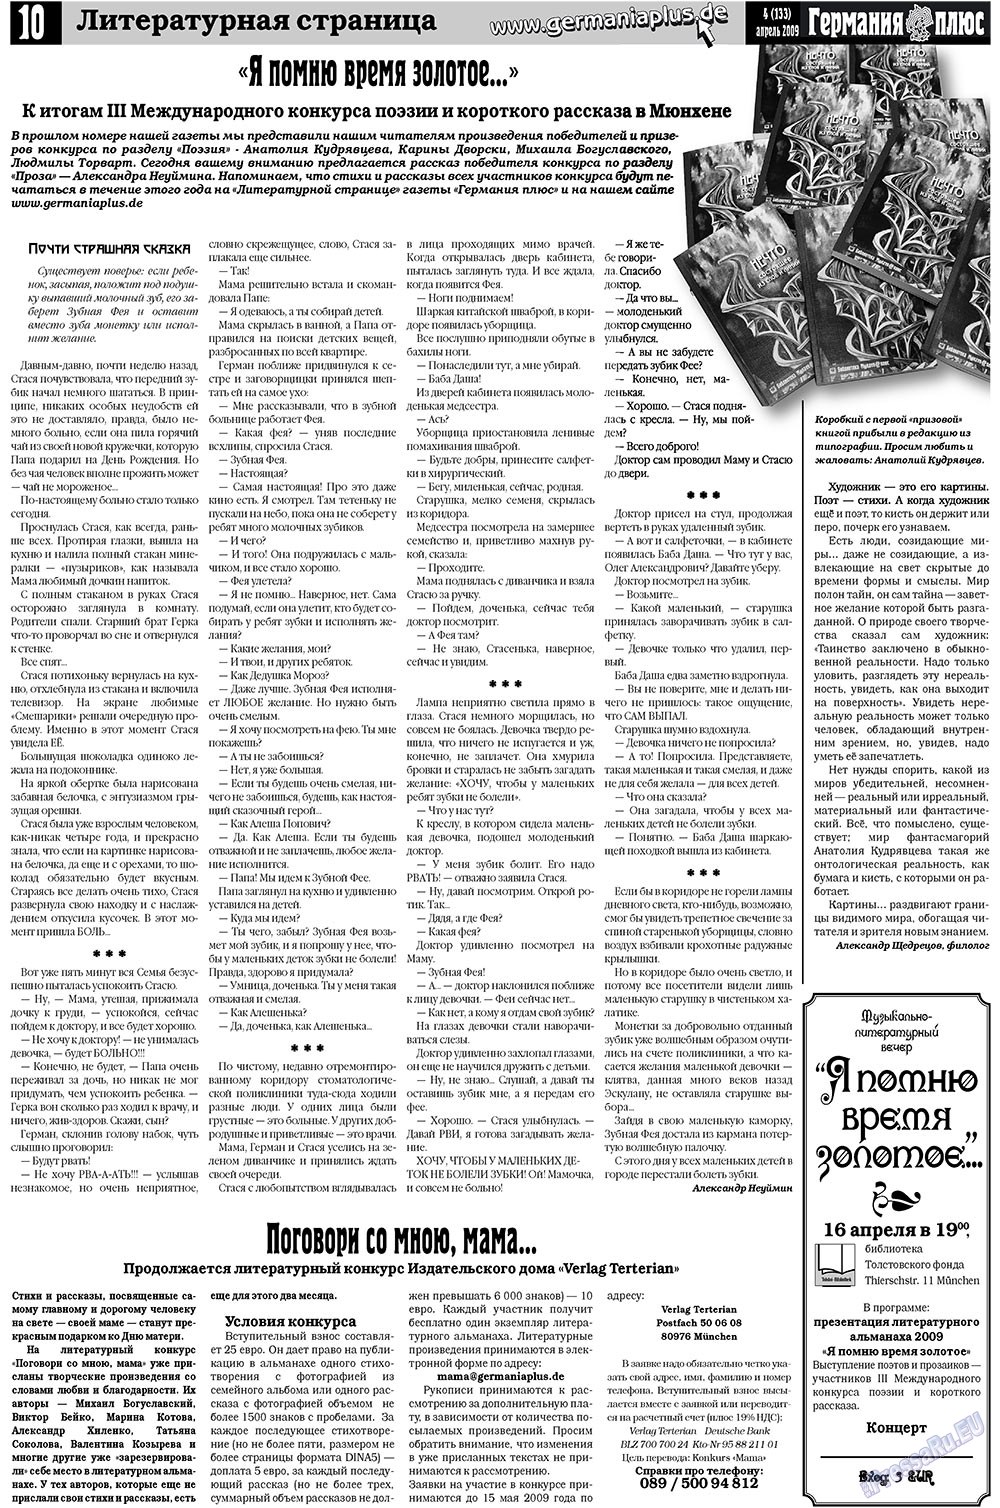 Германия плюс (газета). 2009 год, номер 4, стр. 14